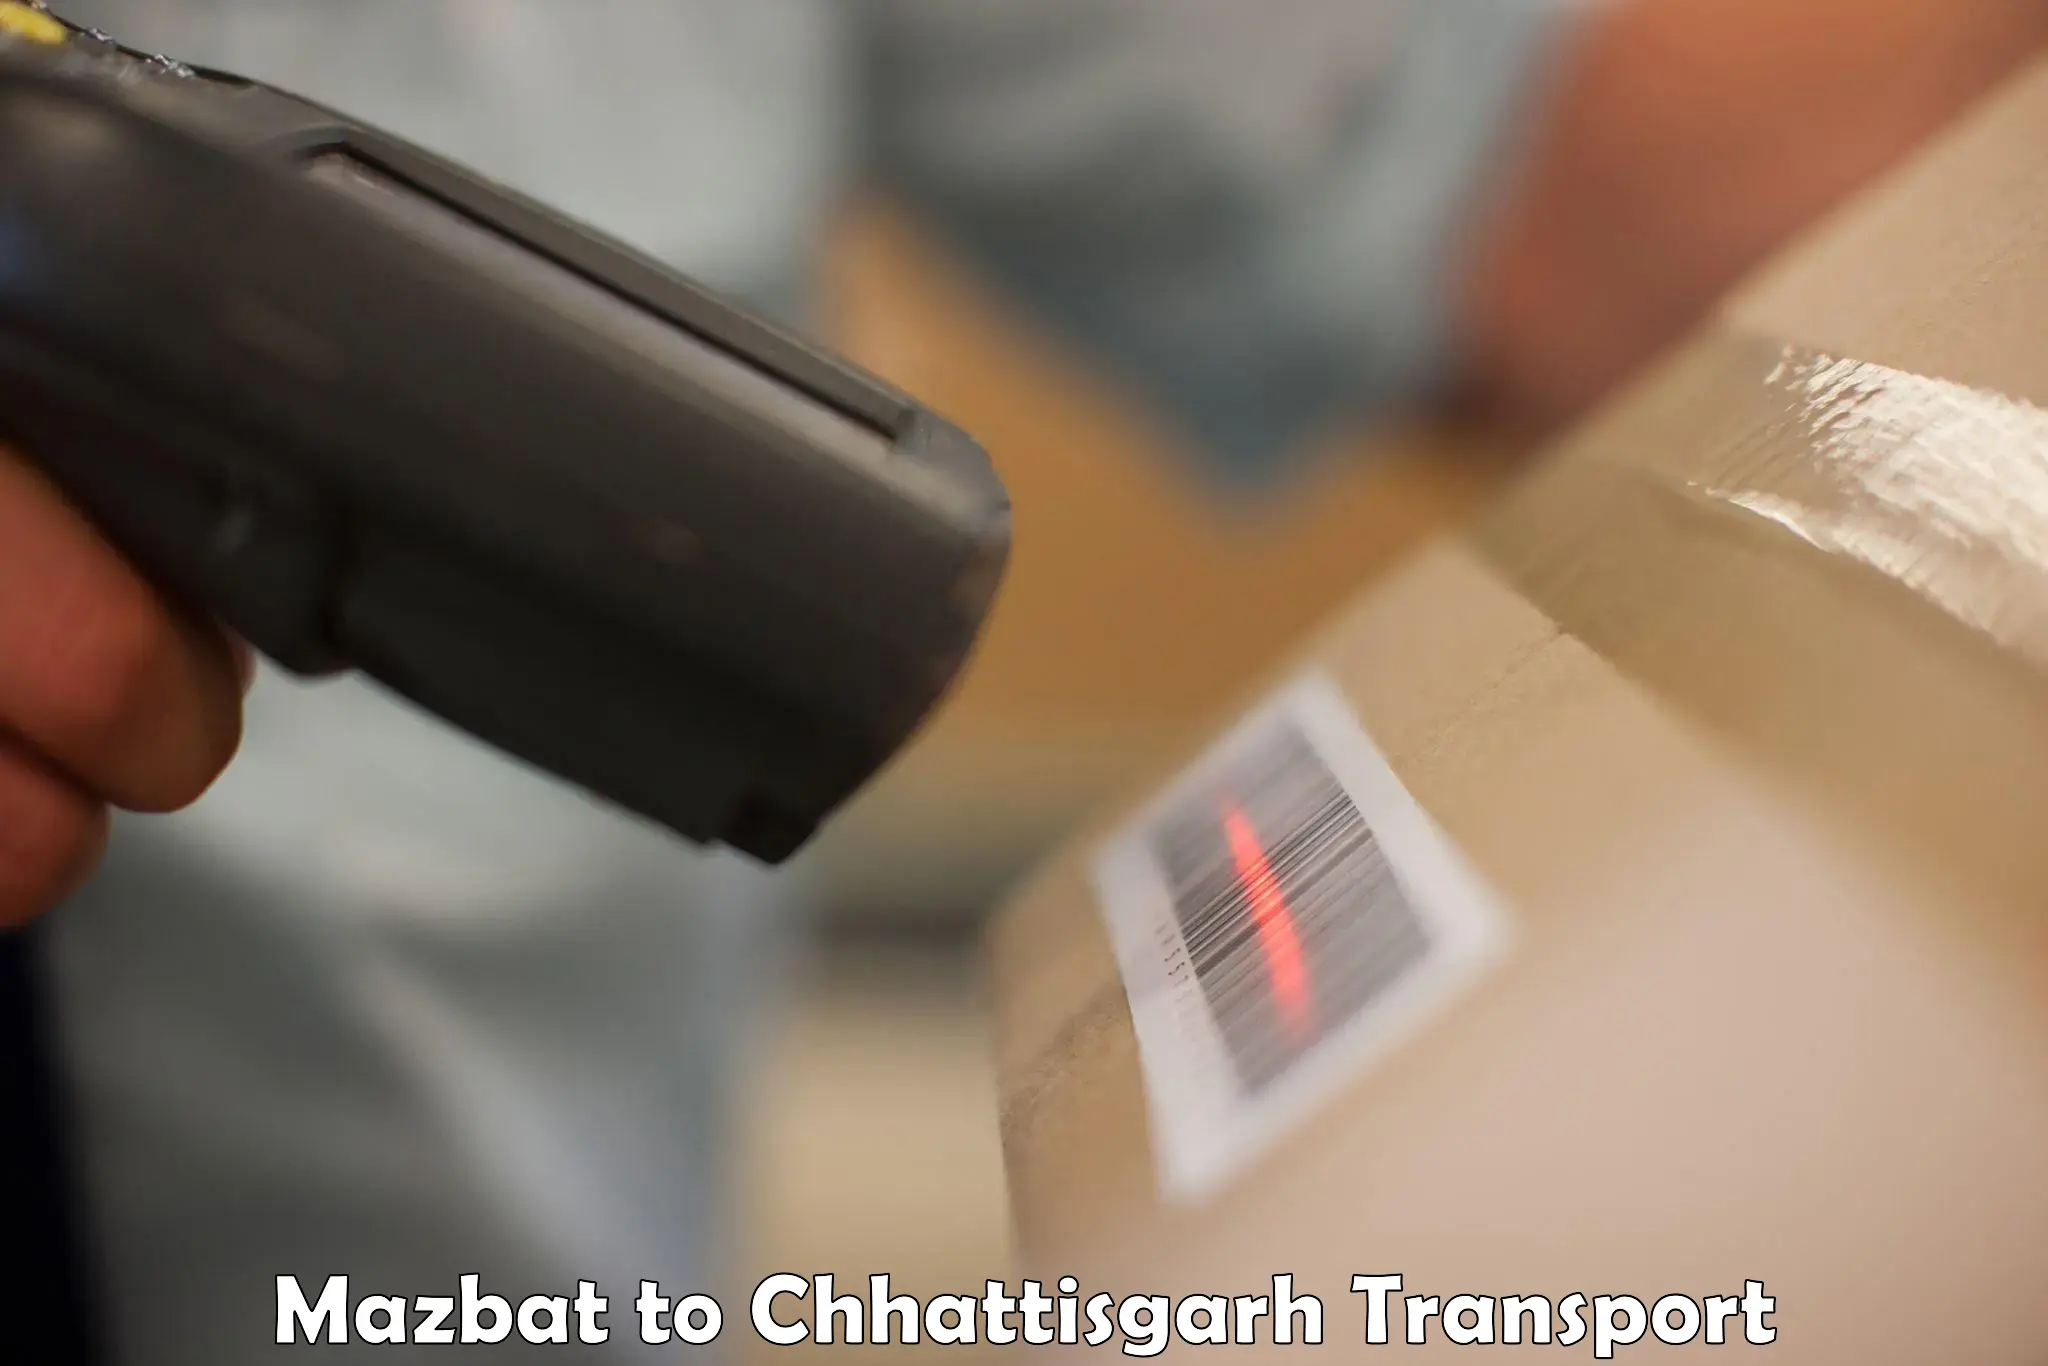 Nationwide transport services Mazbat to Raigarh Chhattisgarh